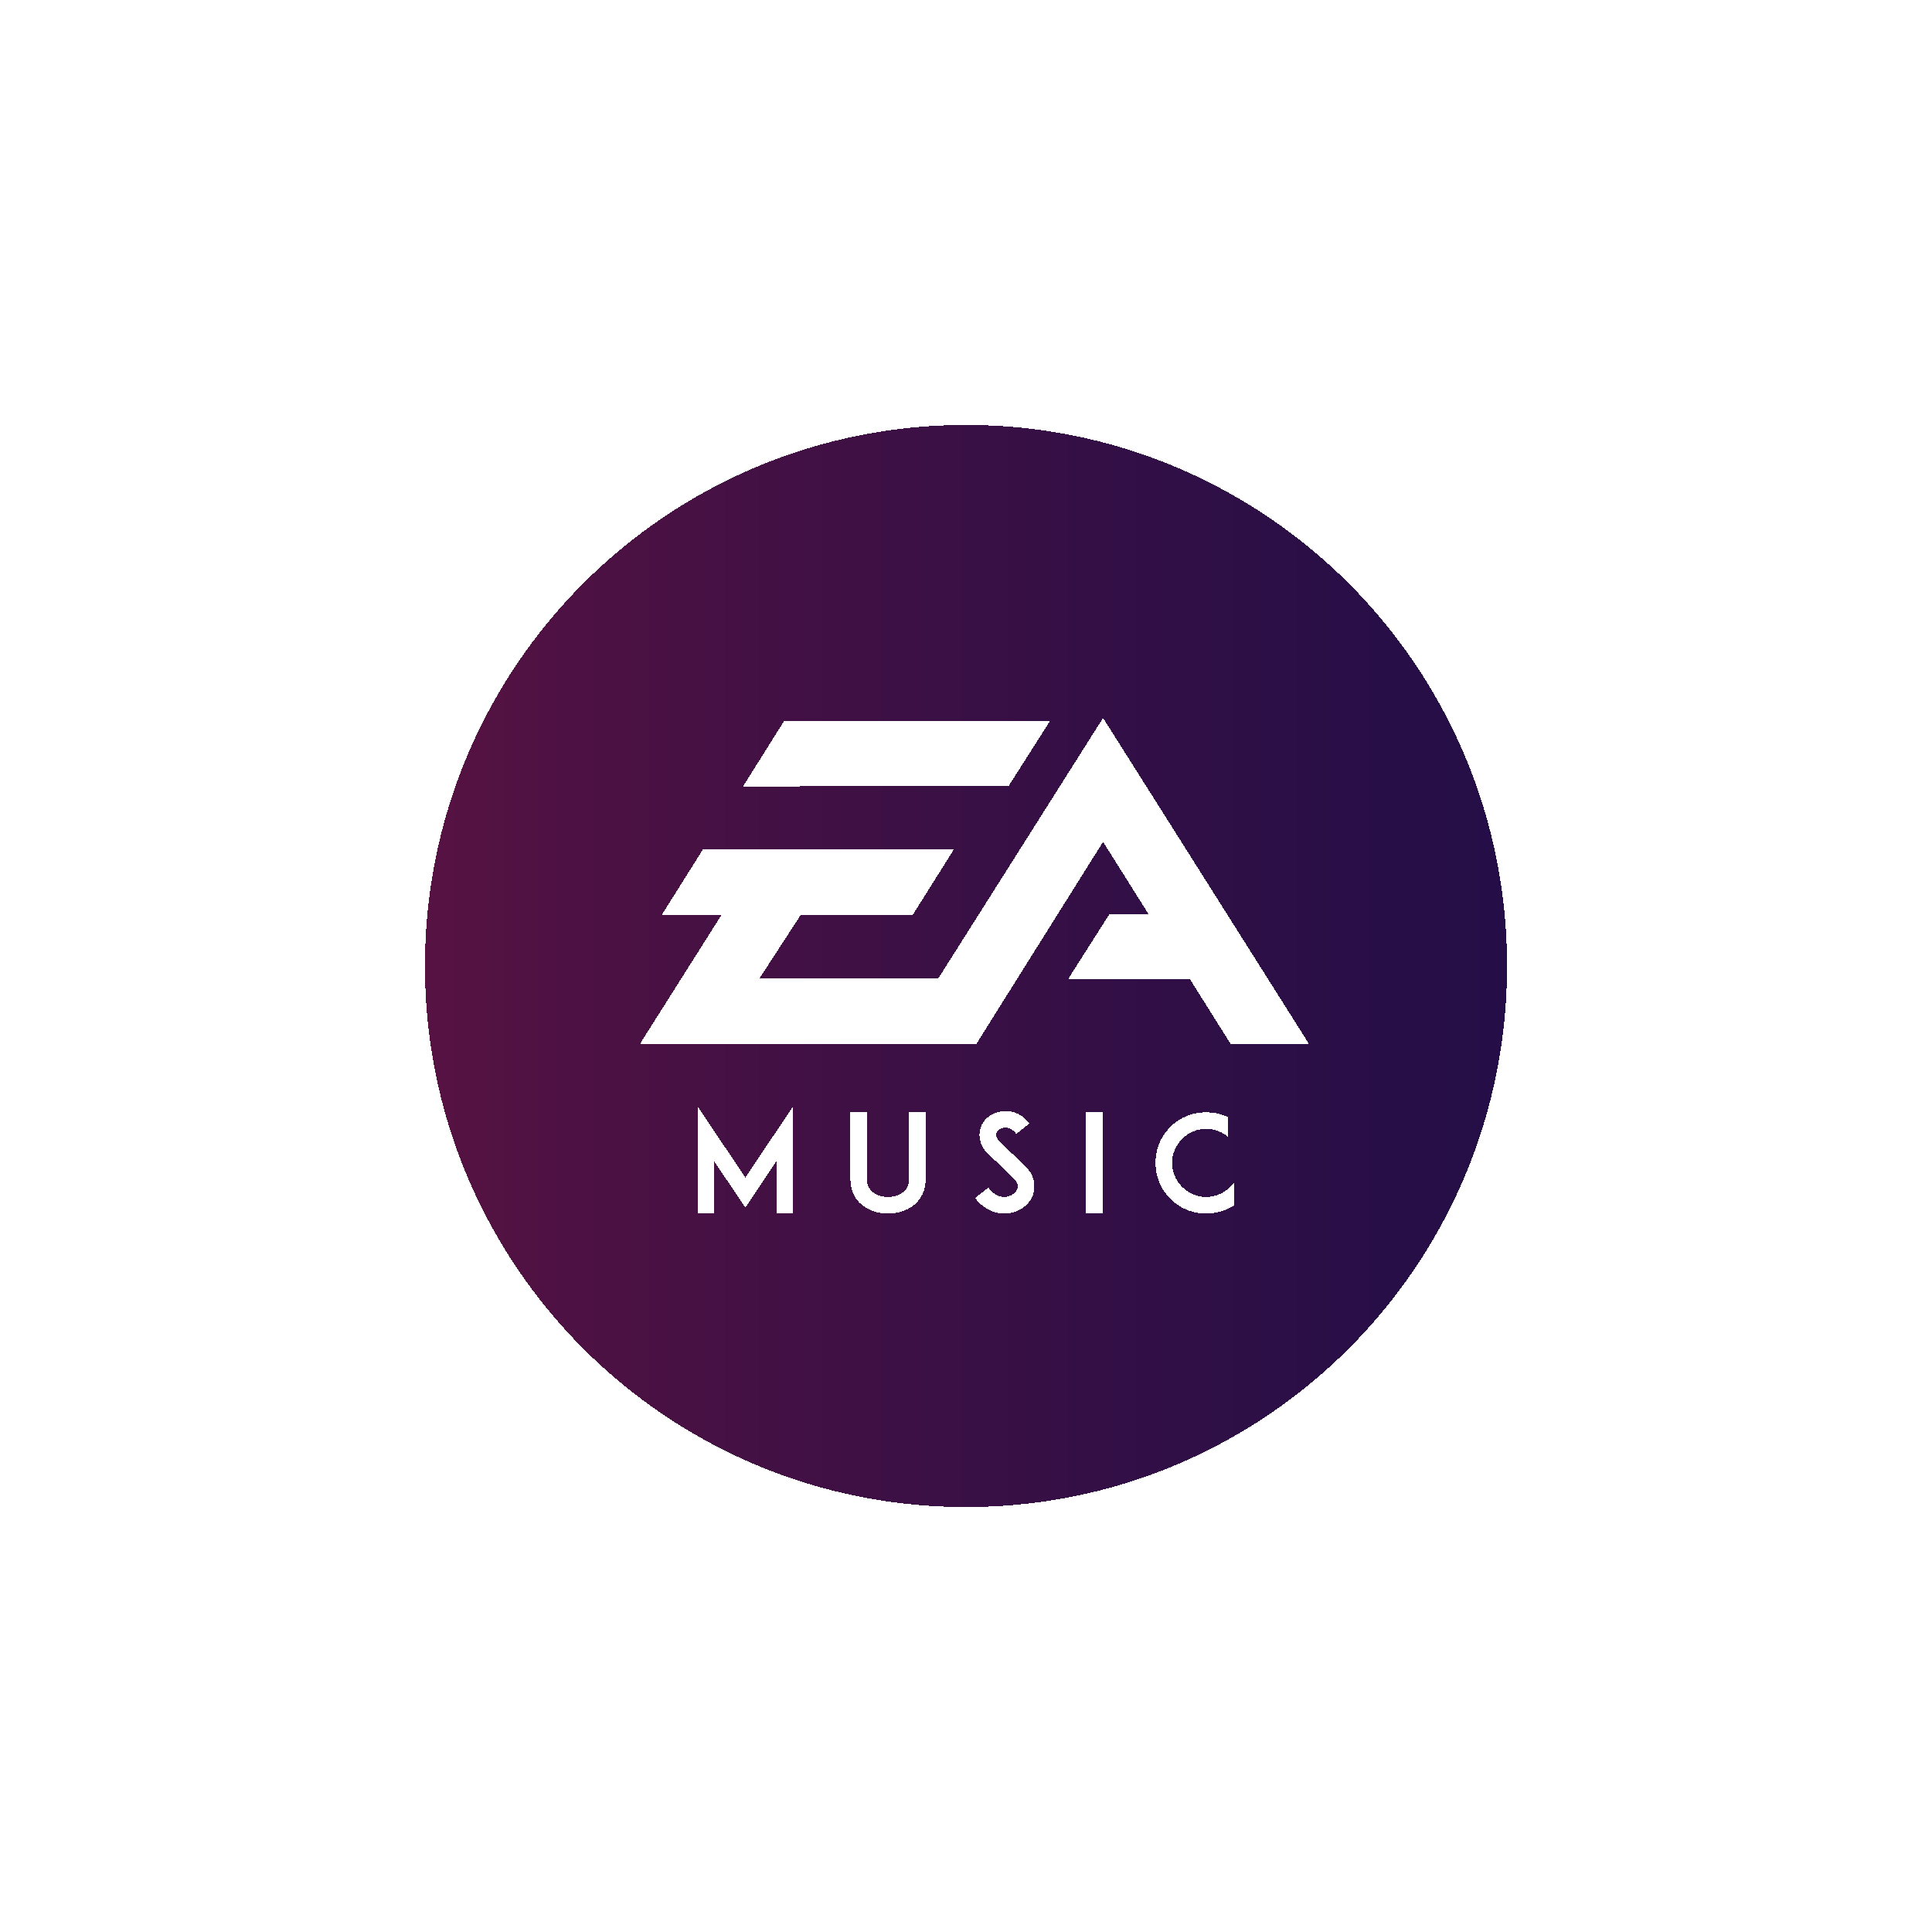 ea music logo purple.png